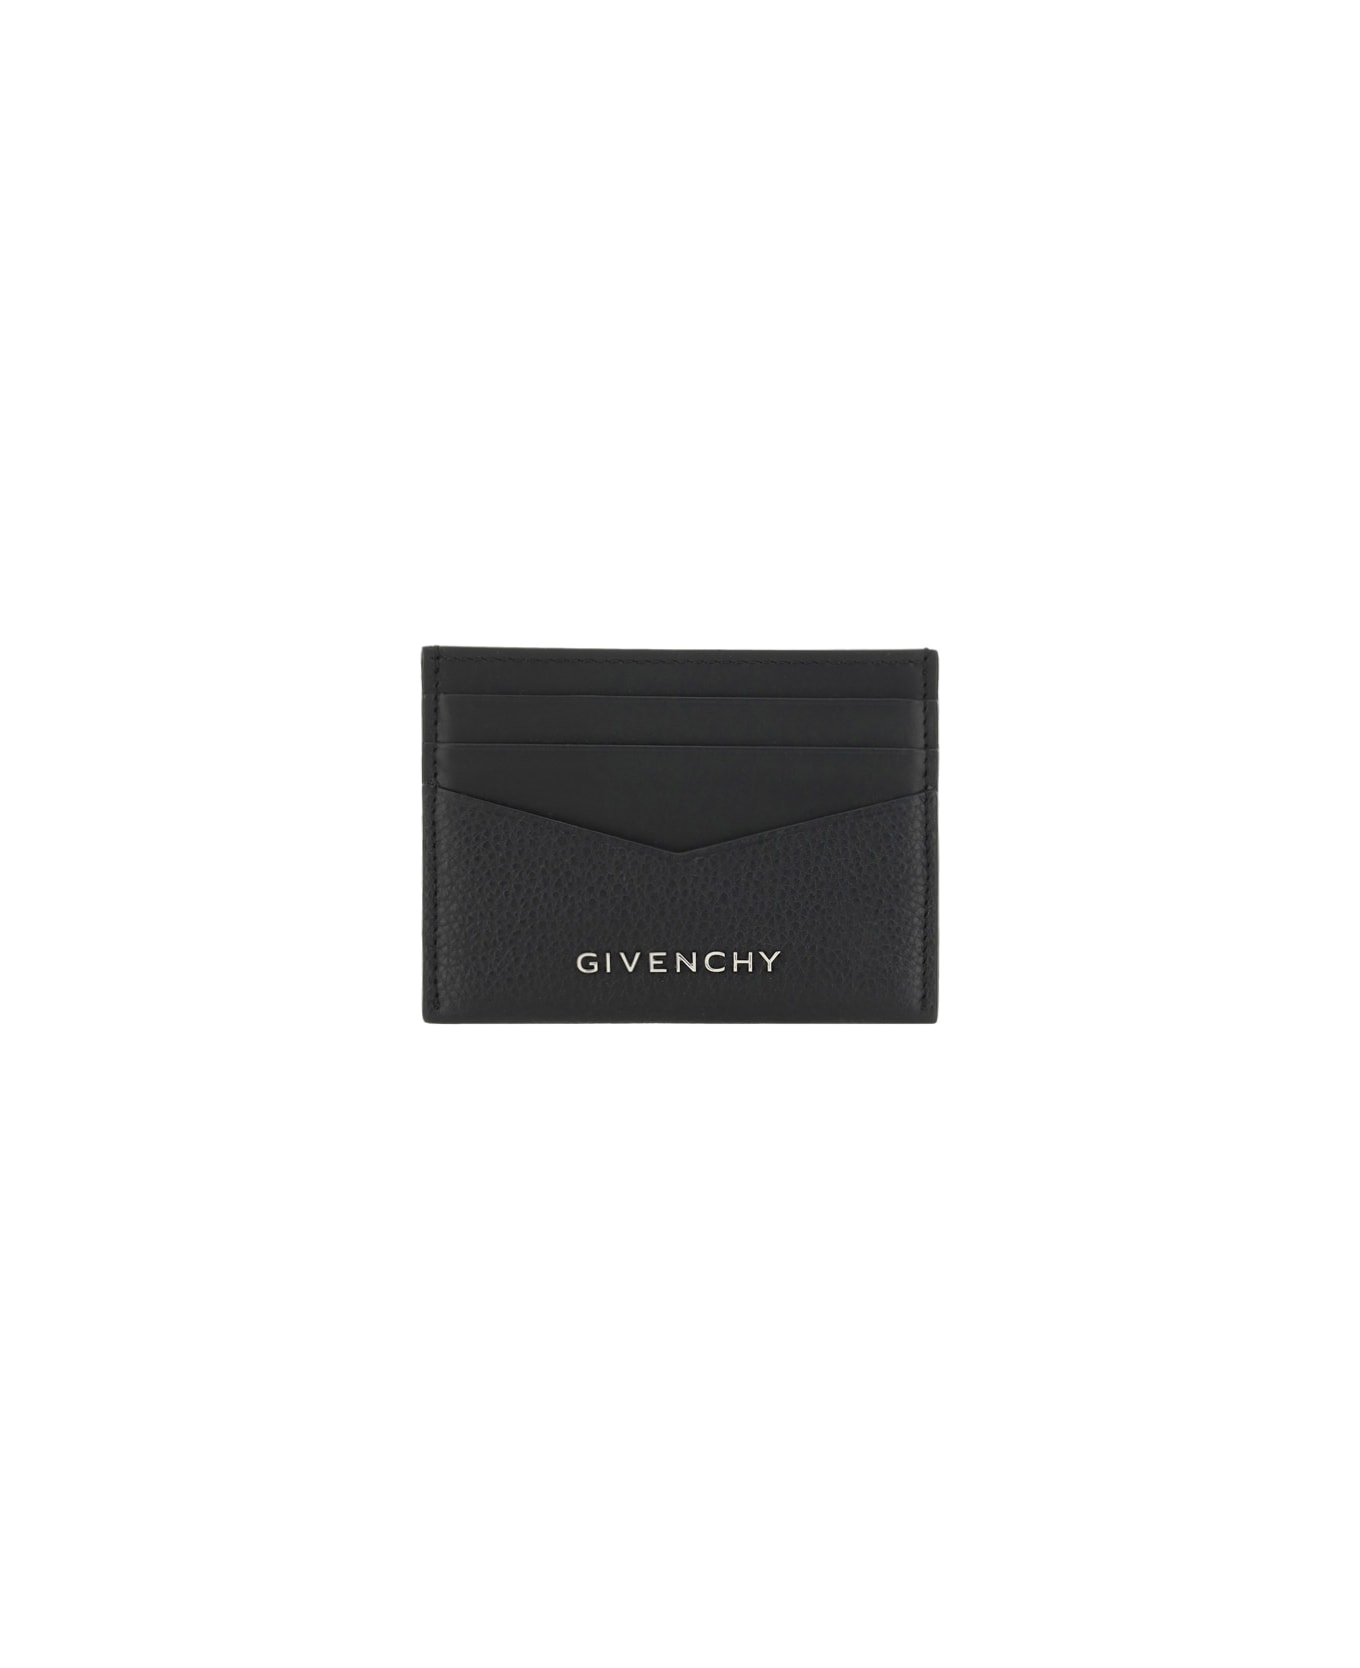 Givenchy over Logo Card Holder - Black